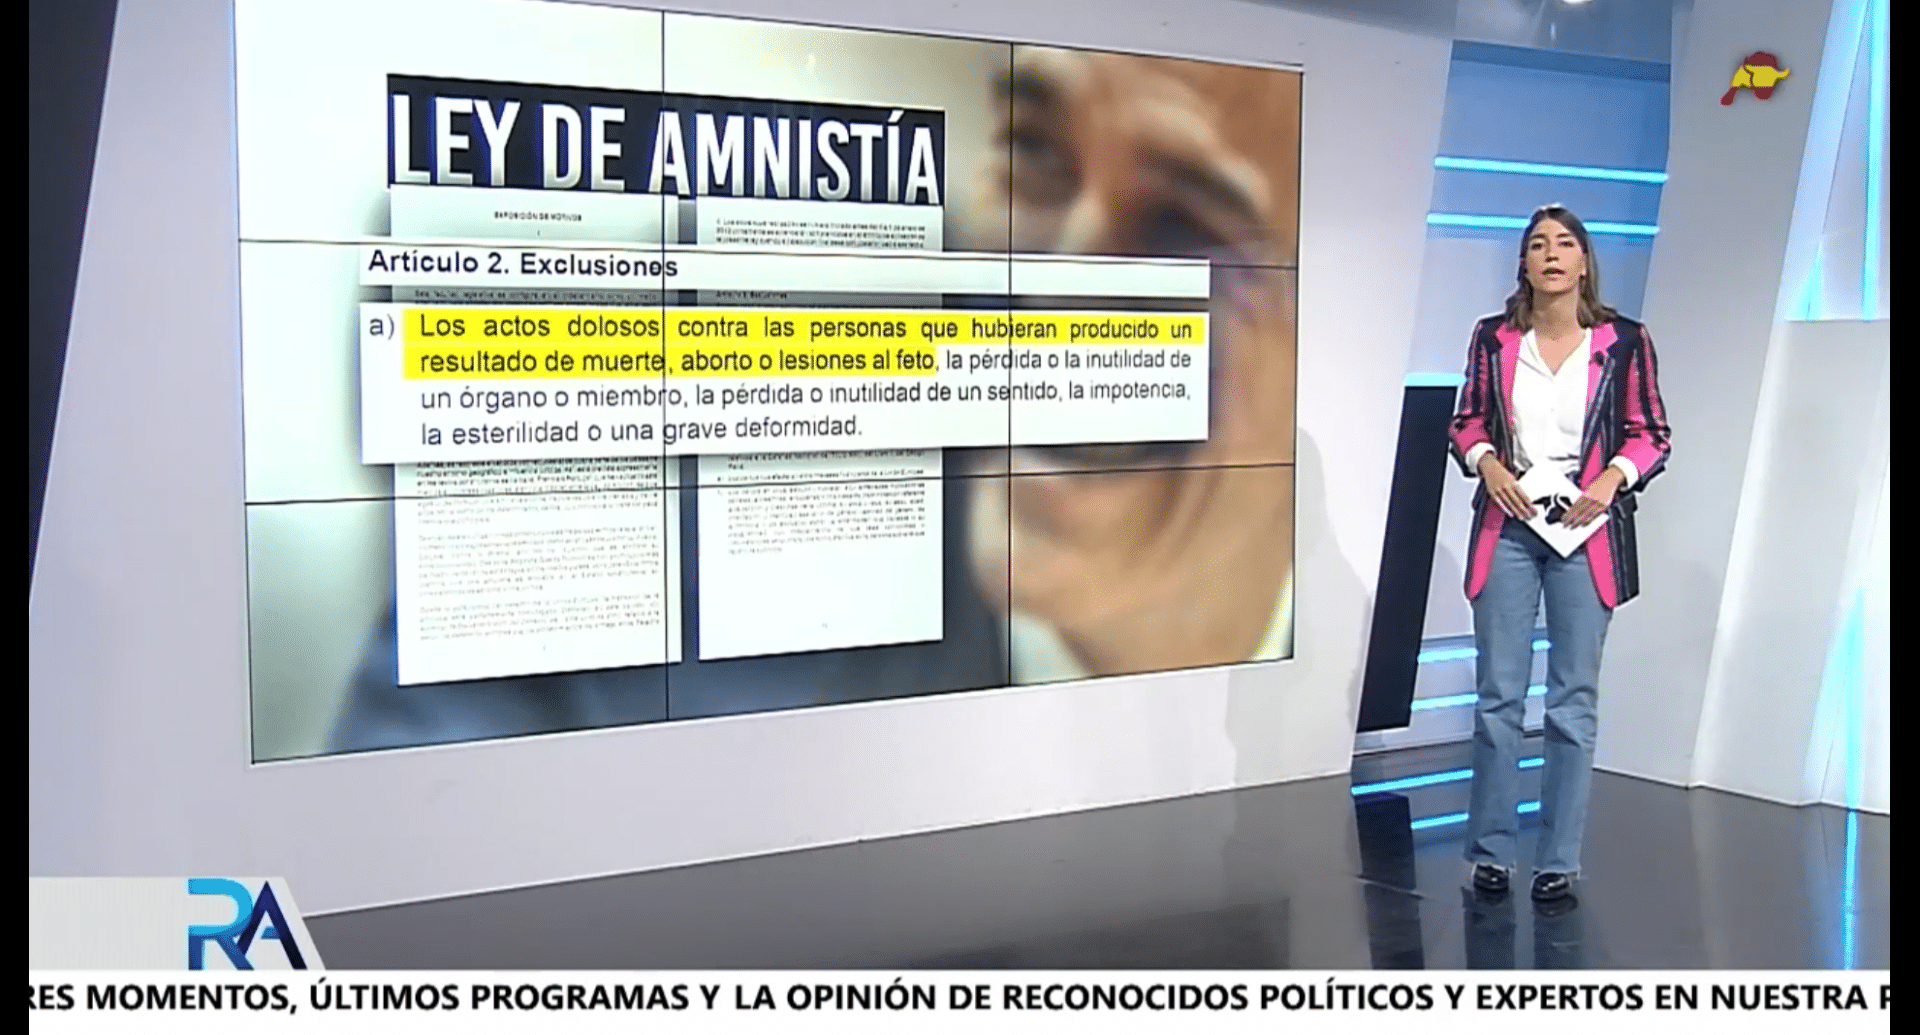 Las claves de la amnistía: blindaje a Puigdemont y a los CDR, perdón de 5 millones y ni palabra del ‘lawfare’